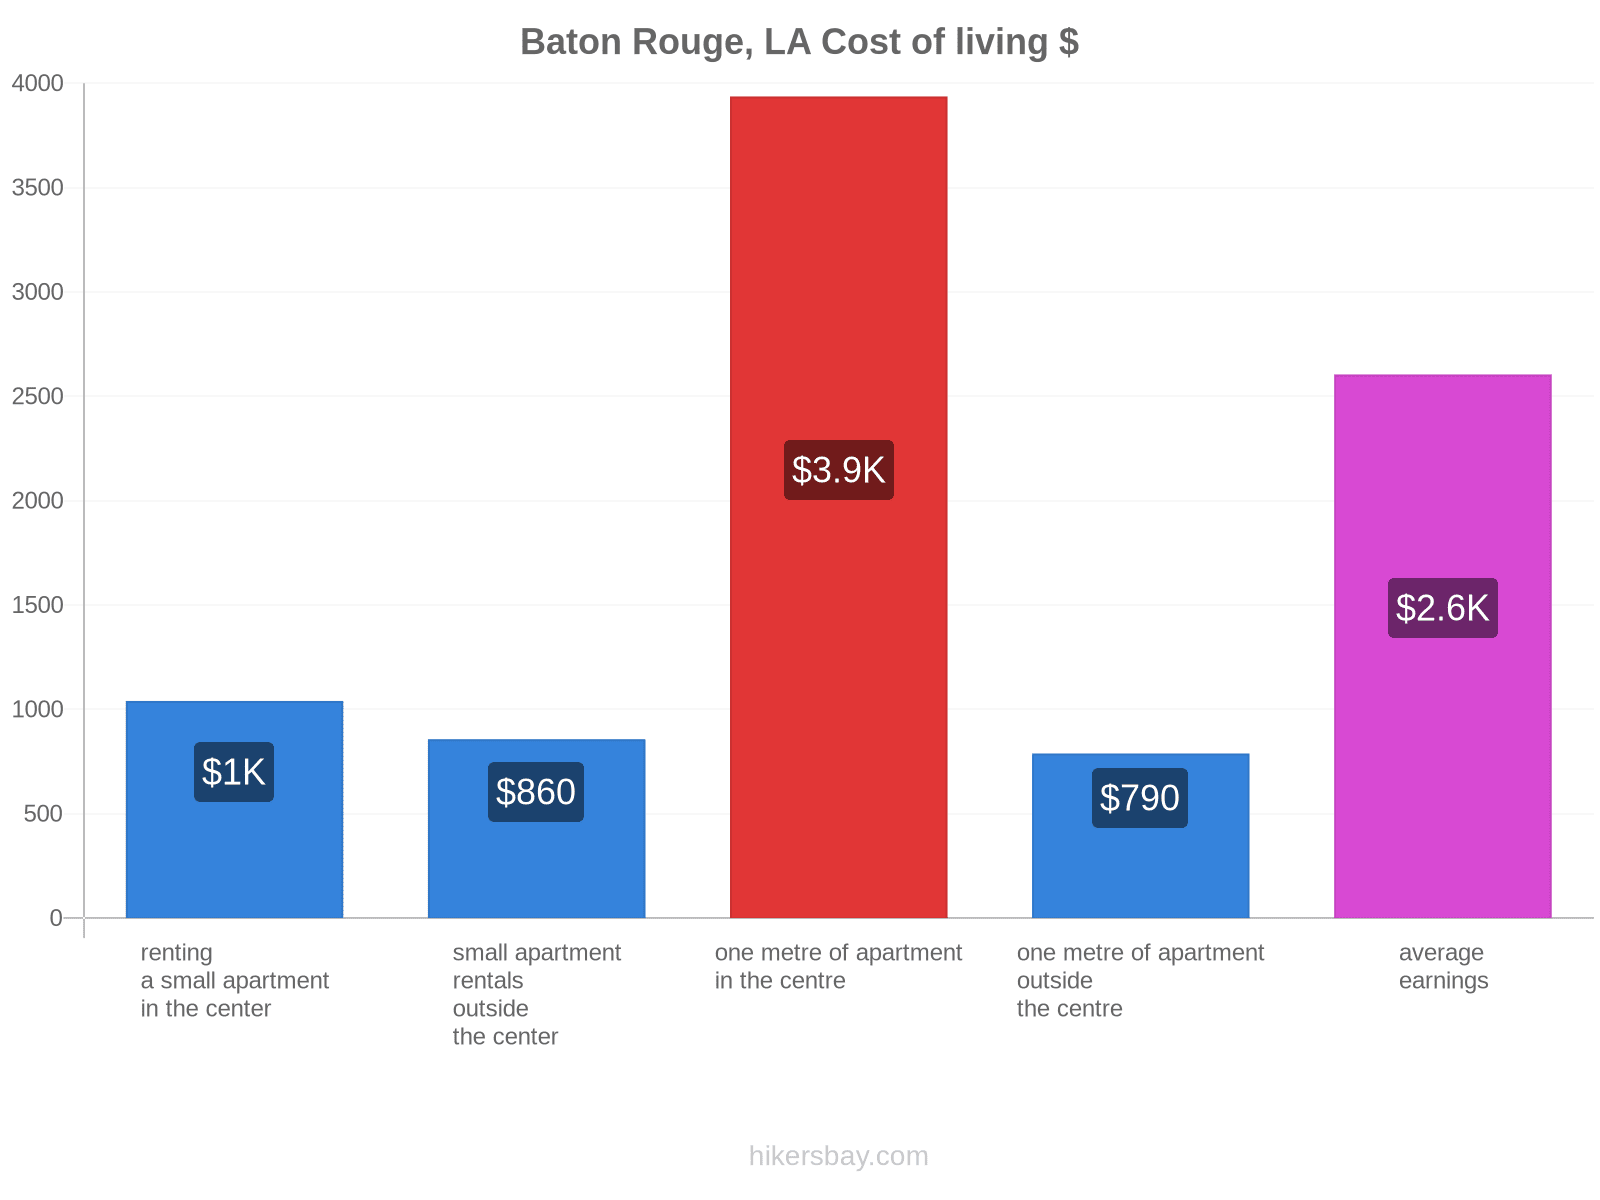 Baton Rouge, LA cost of living hikersbay.com